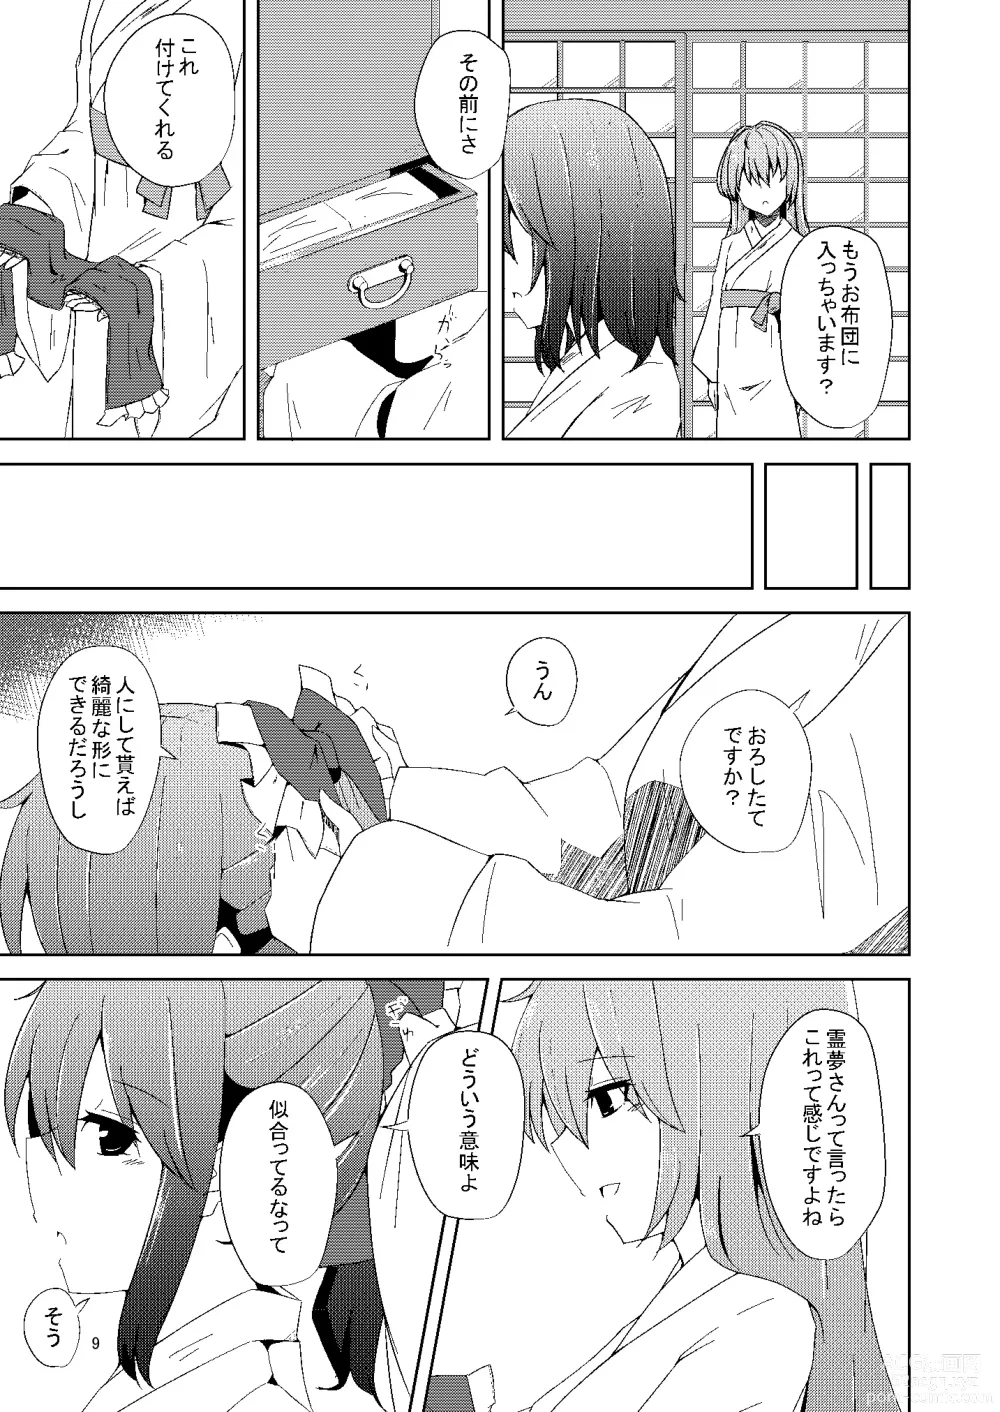 Page 8 of doujinshi Onaji desu ne